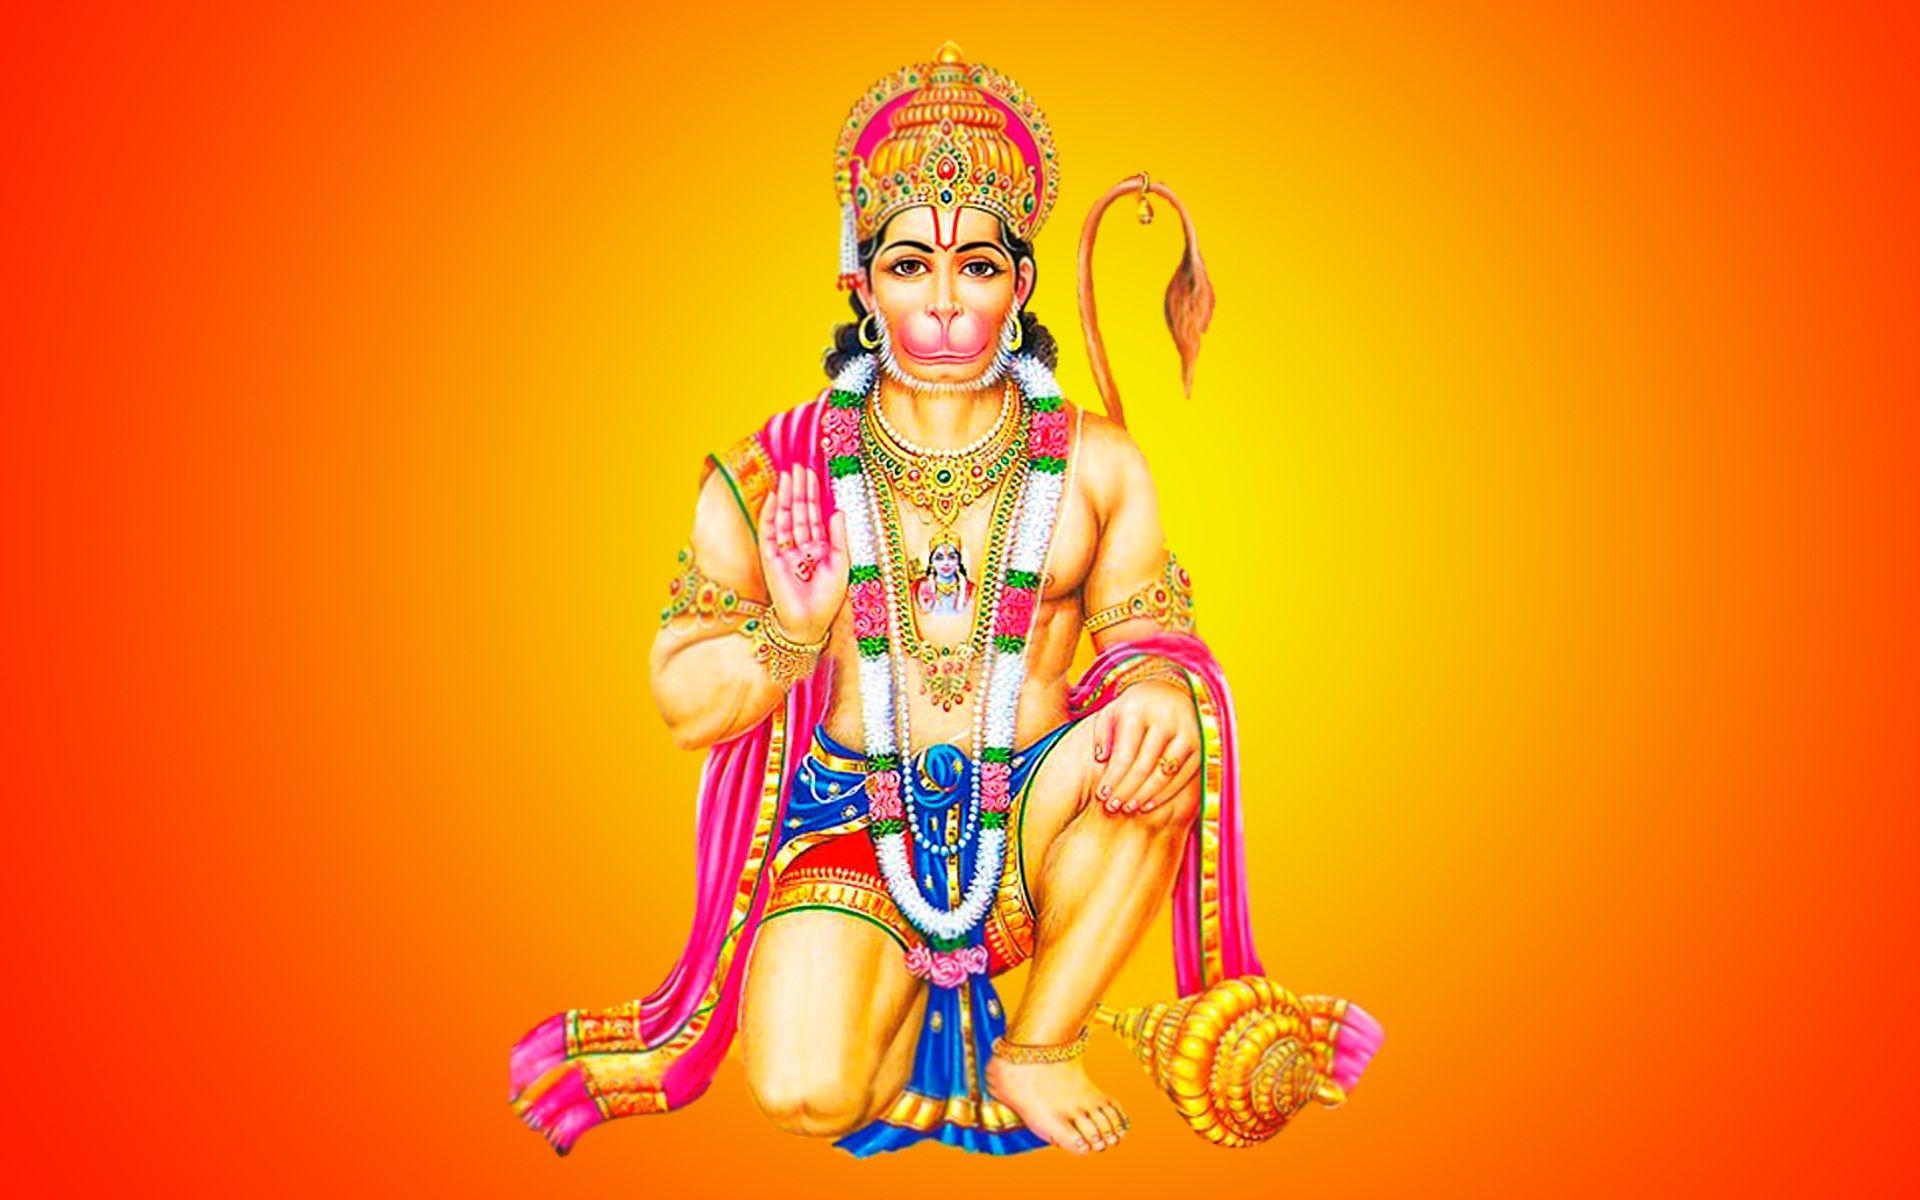 hanuman 3D wallpaper for desktop. dromgfl.top. Hanuman